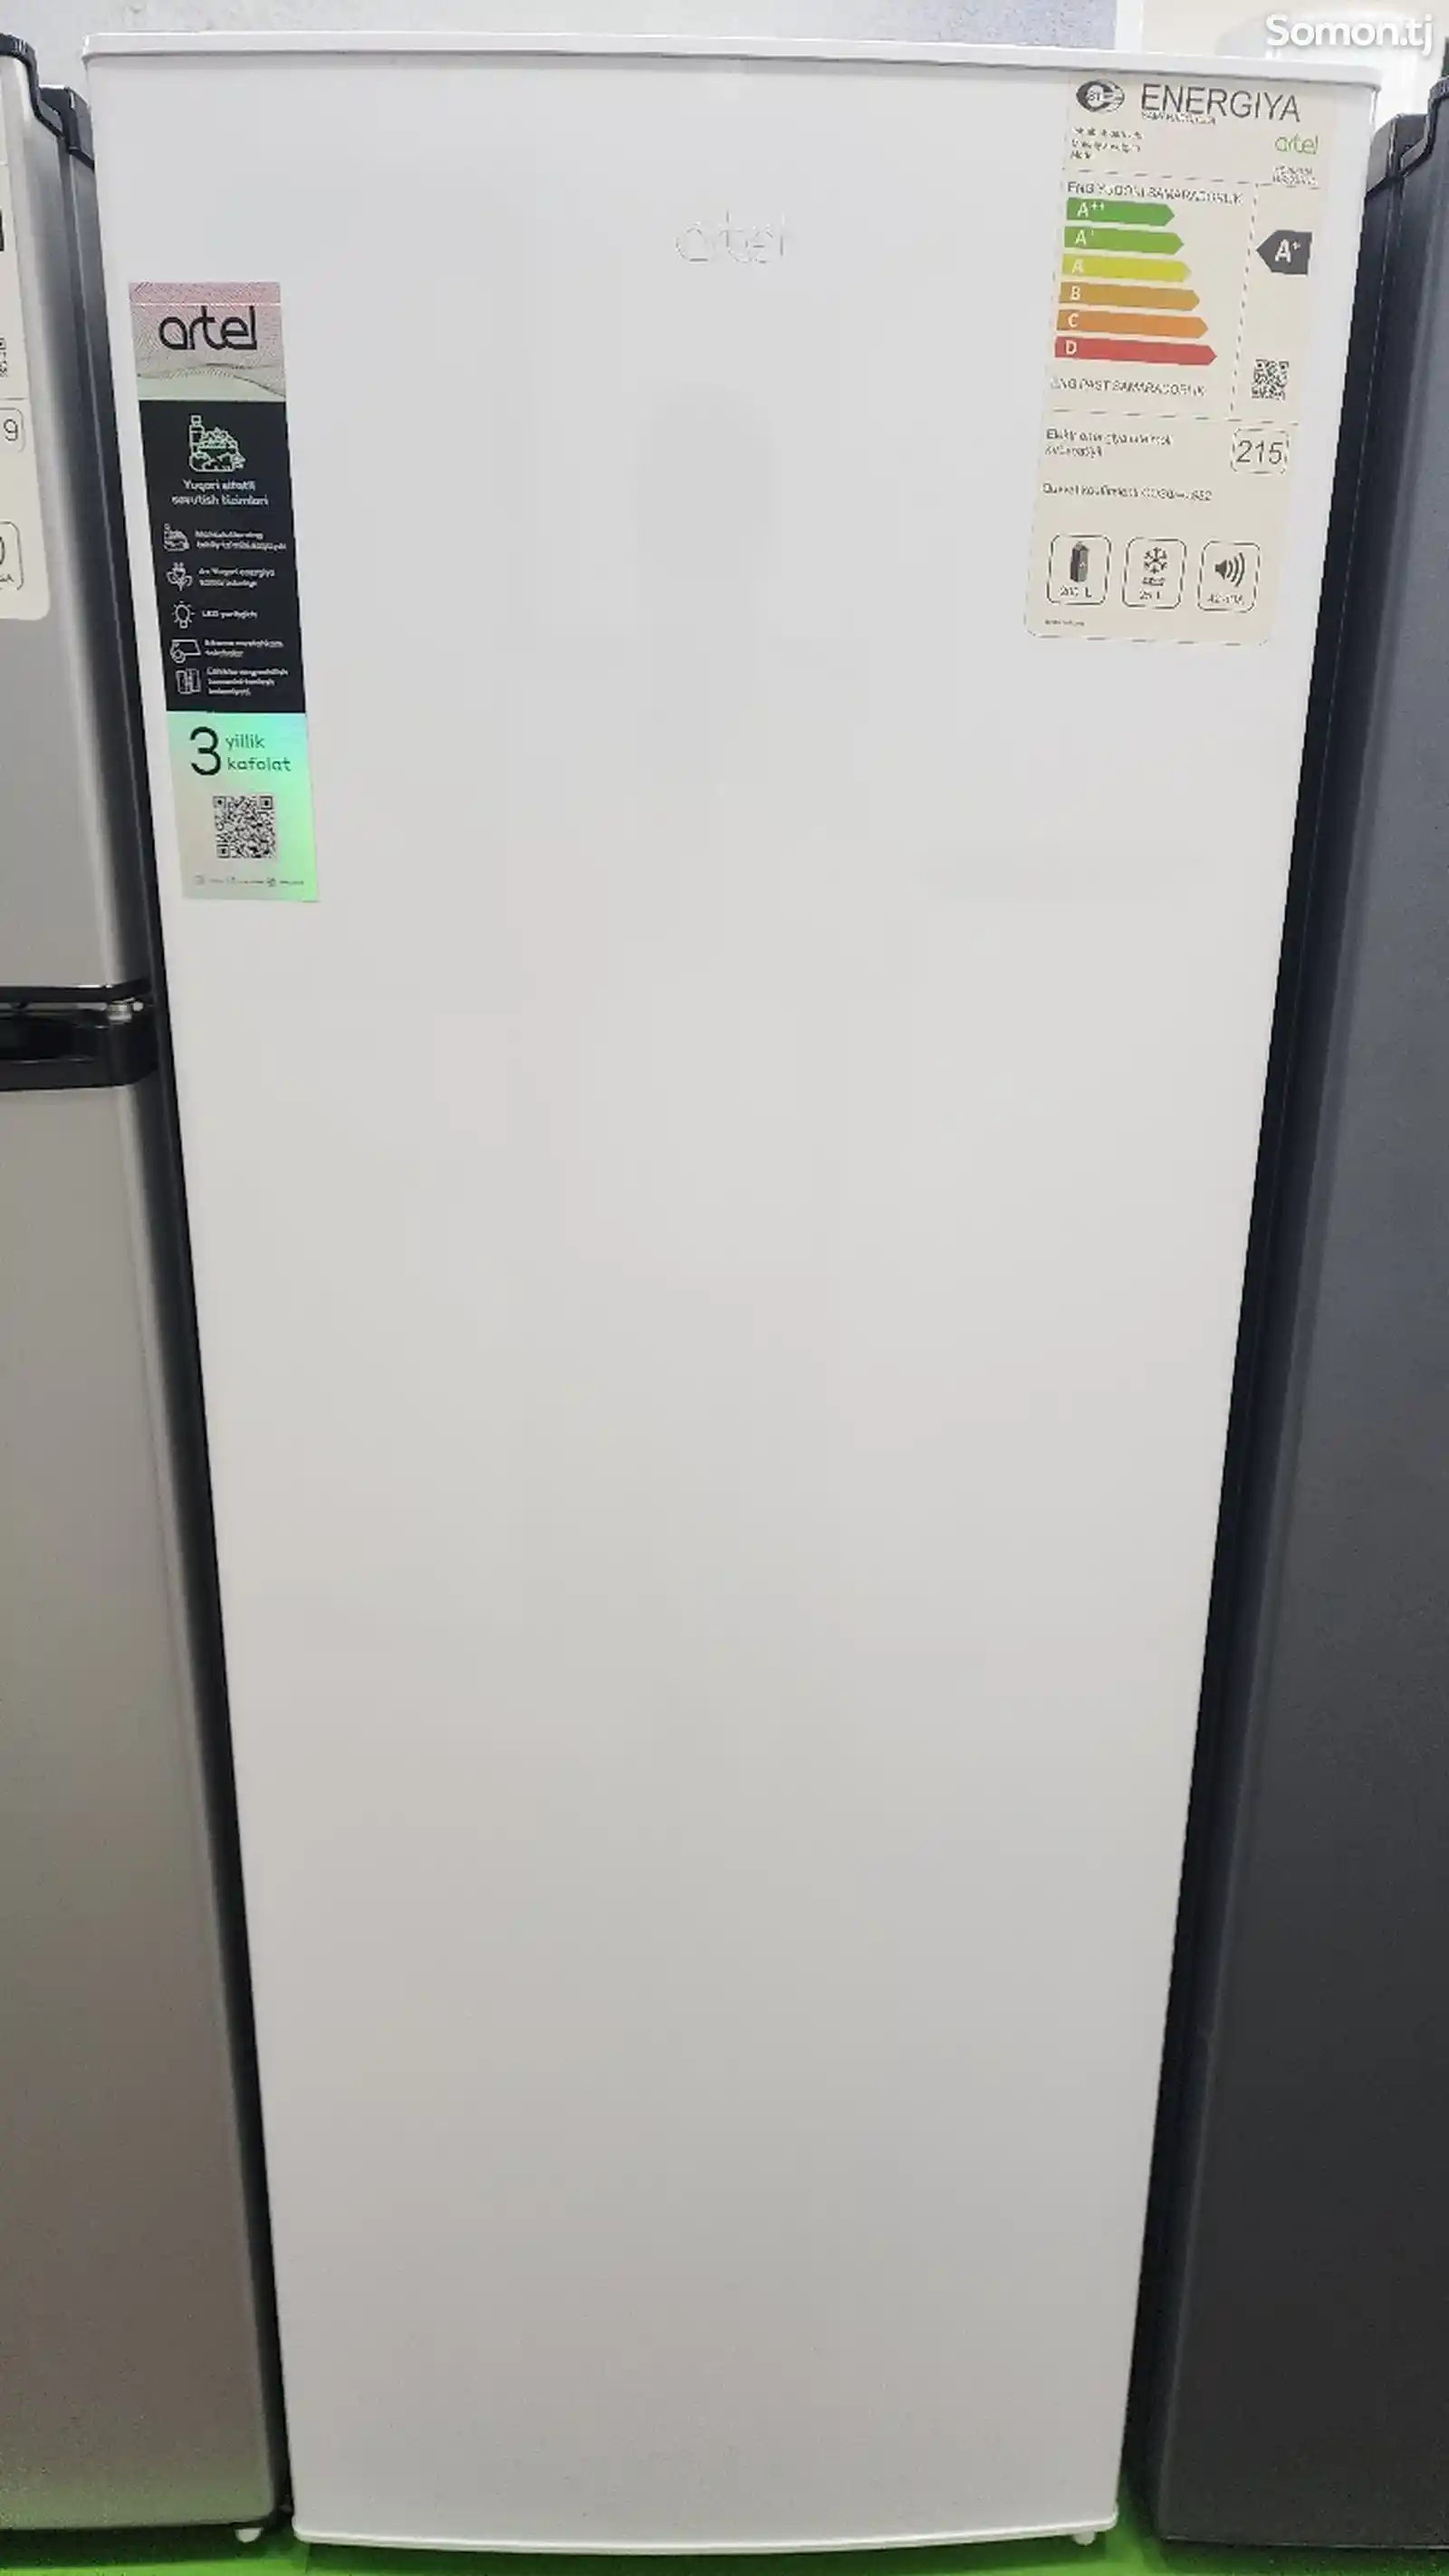 Однокамерный холодильник Artel 293-1